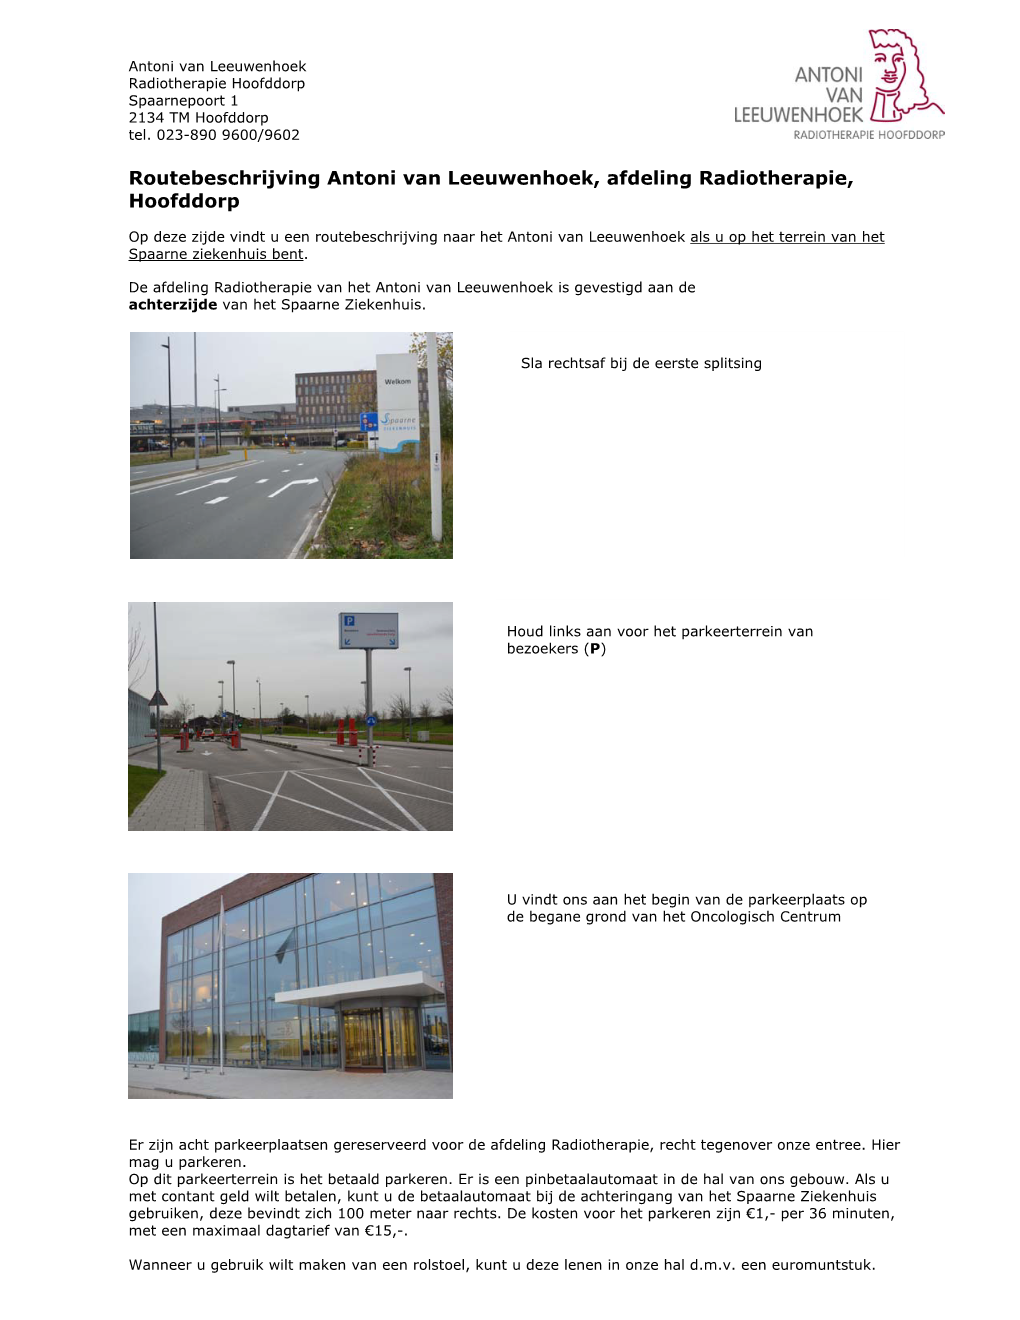 Routebeschrijving Antoni Van Leeuwenhoek, Afdeling Radiotherapie, Hoofddorp